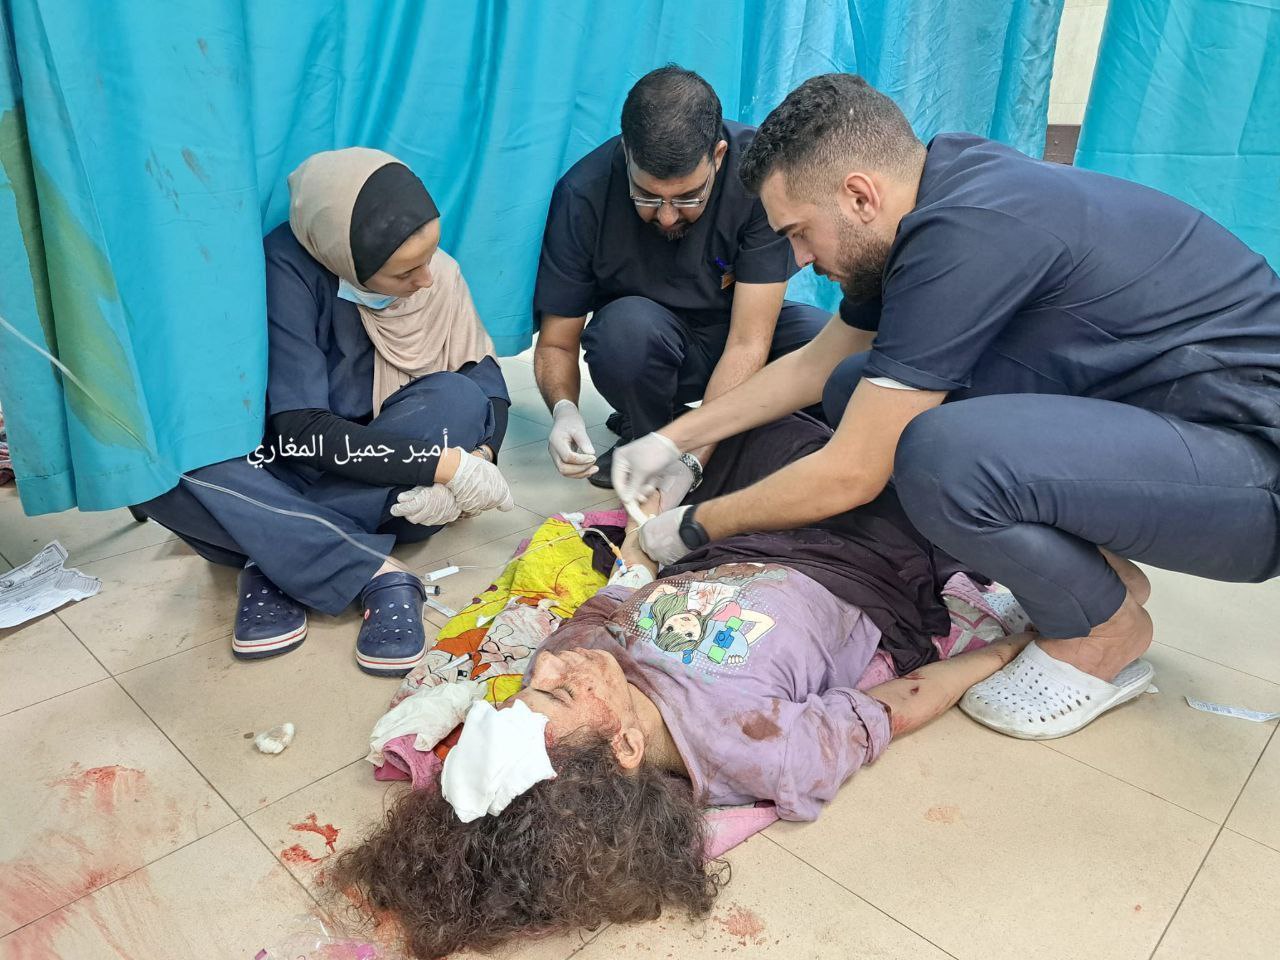 الطواقم الطبية في مستشفى شهداء الأقصى تضطر لإسعاف المصابين على الأرض بسبب اكتظاظ المشفى بمئات المصابين جراء عدوان الاحتلال المستمر على غزة